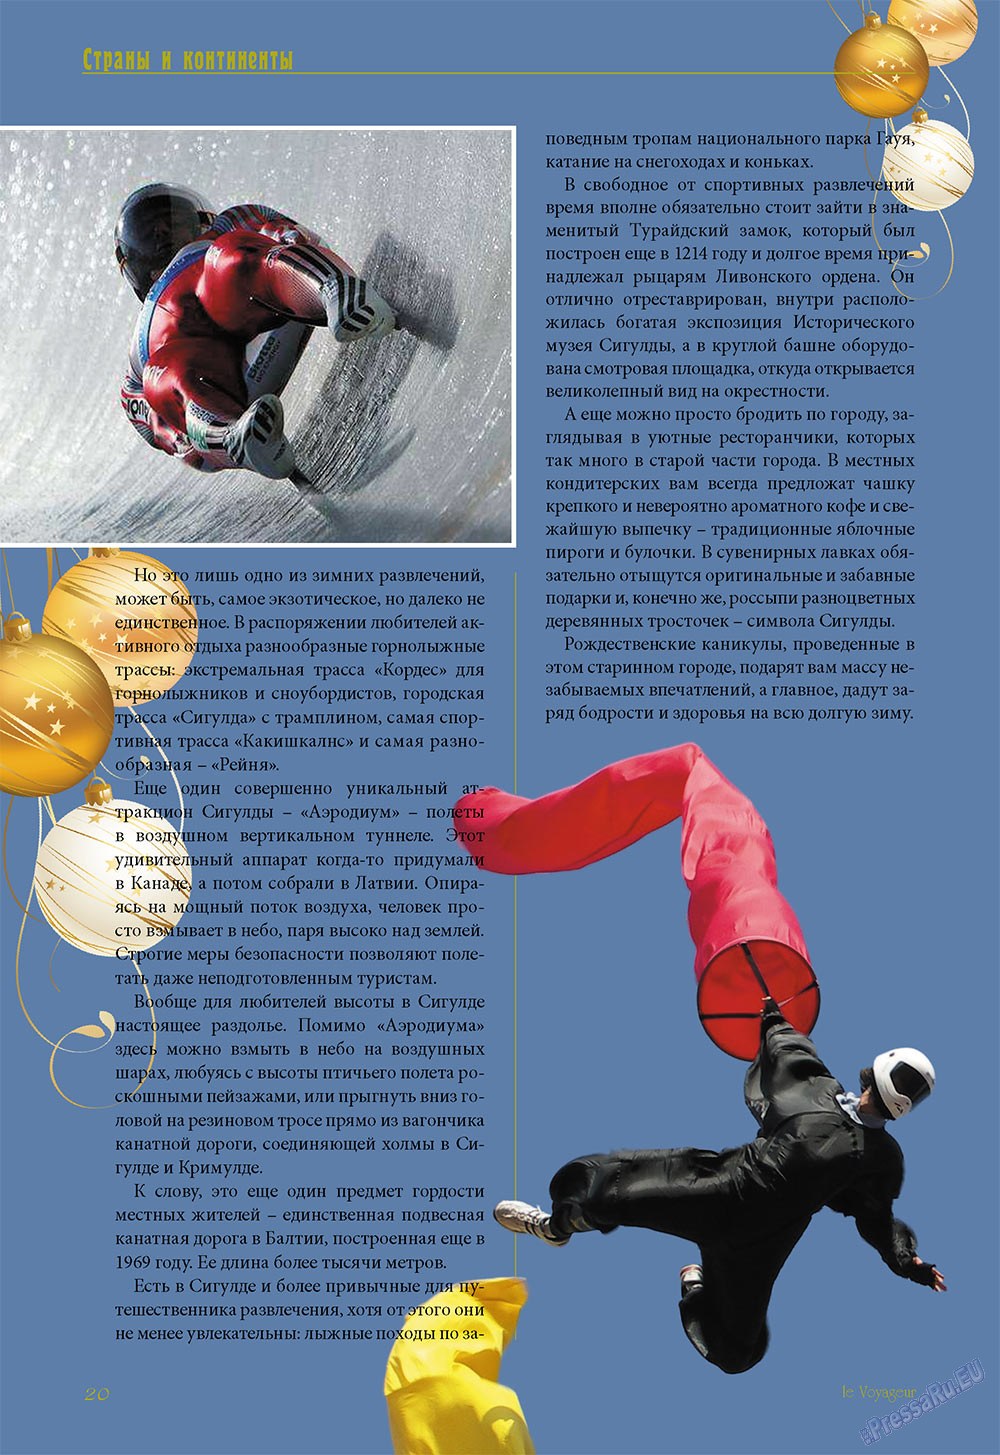 Le Voyageur (журнал). 2011 год, номер 19, стр. 24